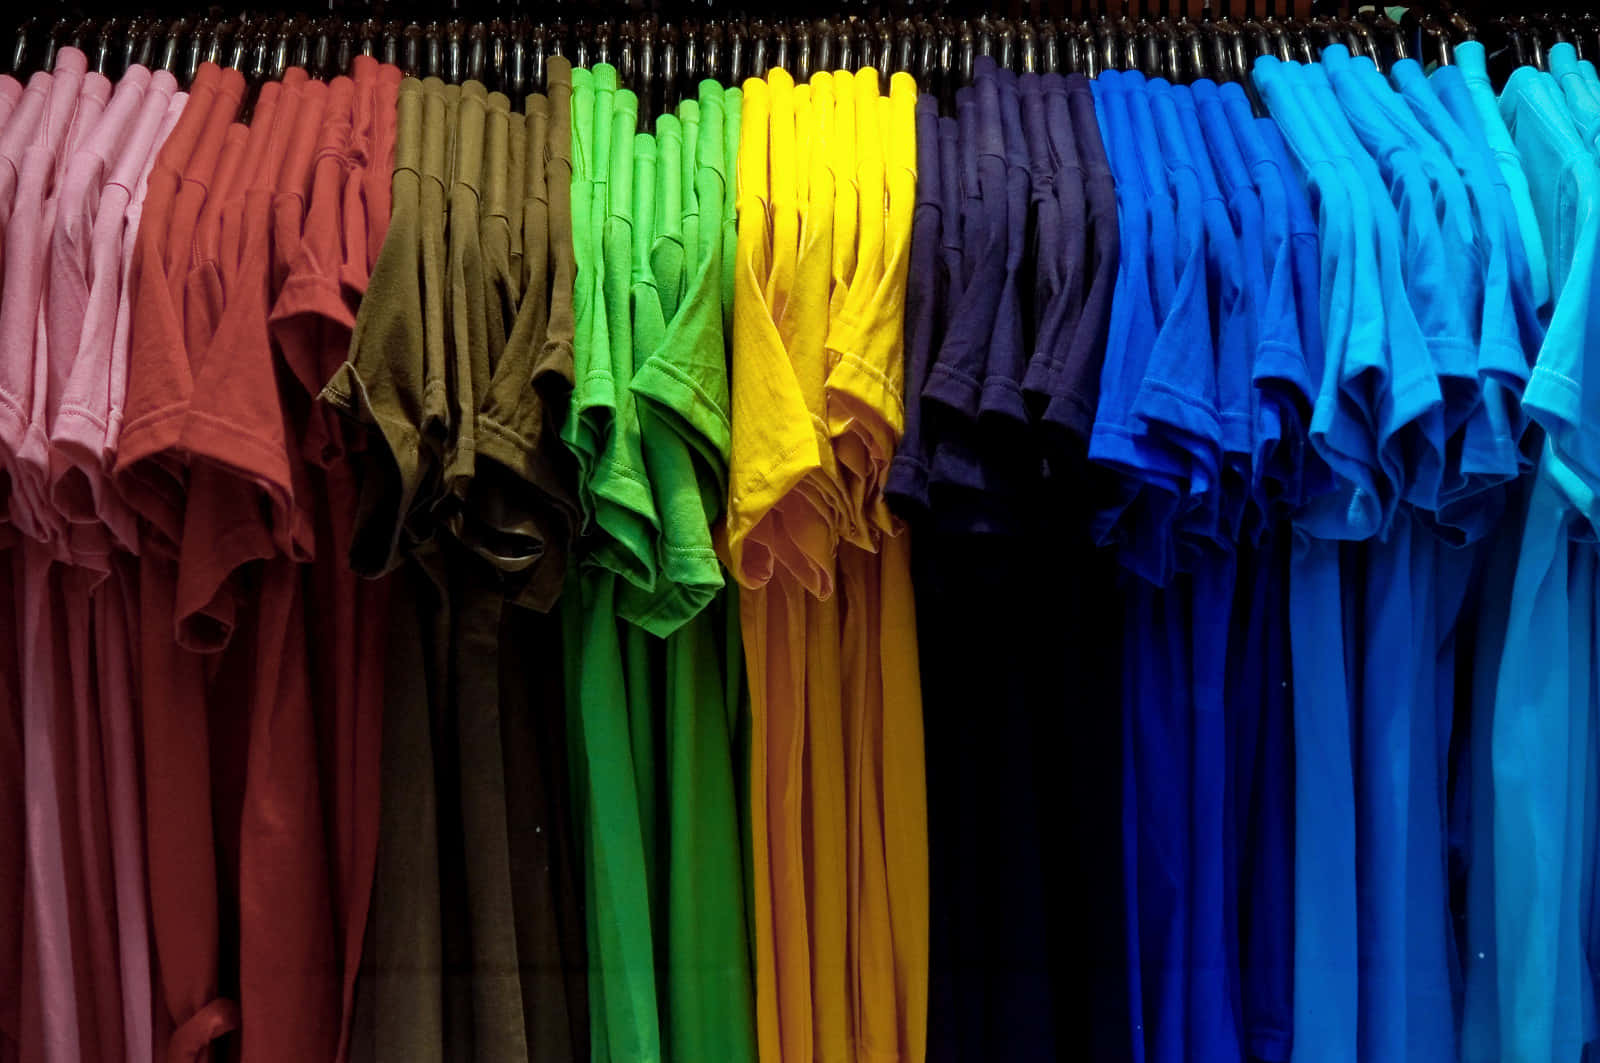 Immaginidi Magliette Colorate Nel Negozio Di Abbigliamento.